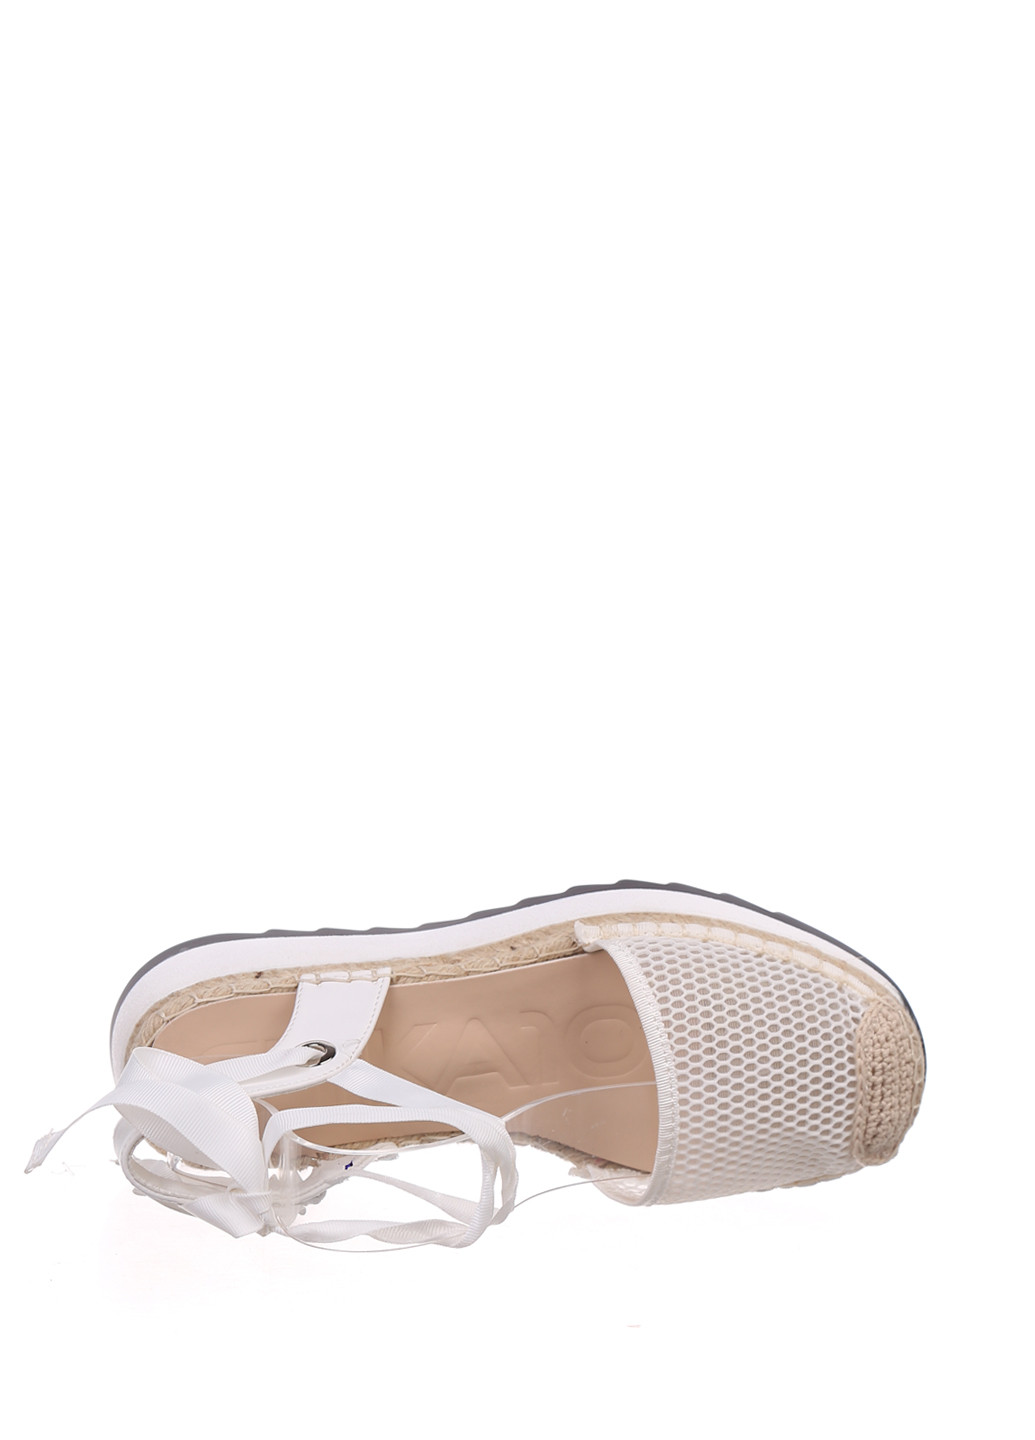 Белые босоножки Chika10 на шнурках с перфорацией